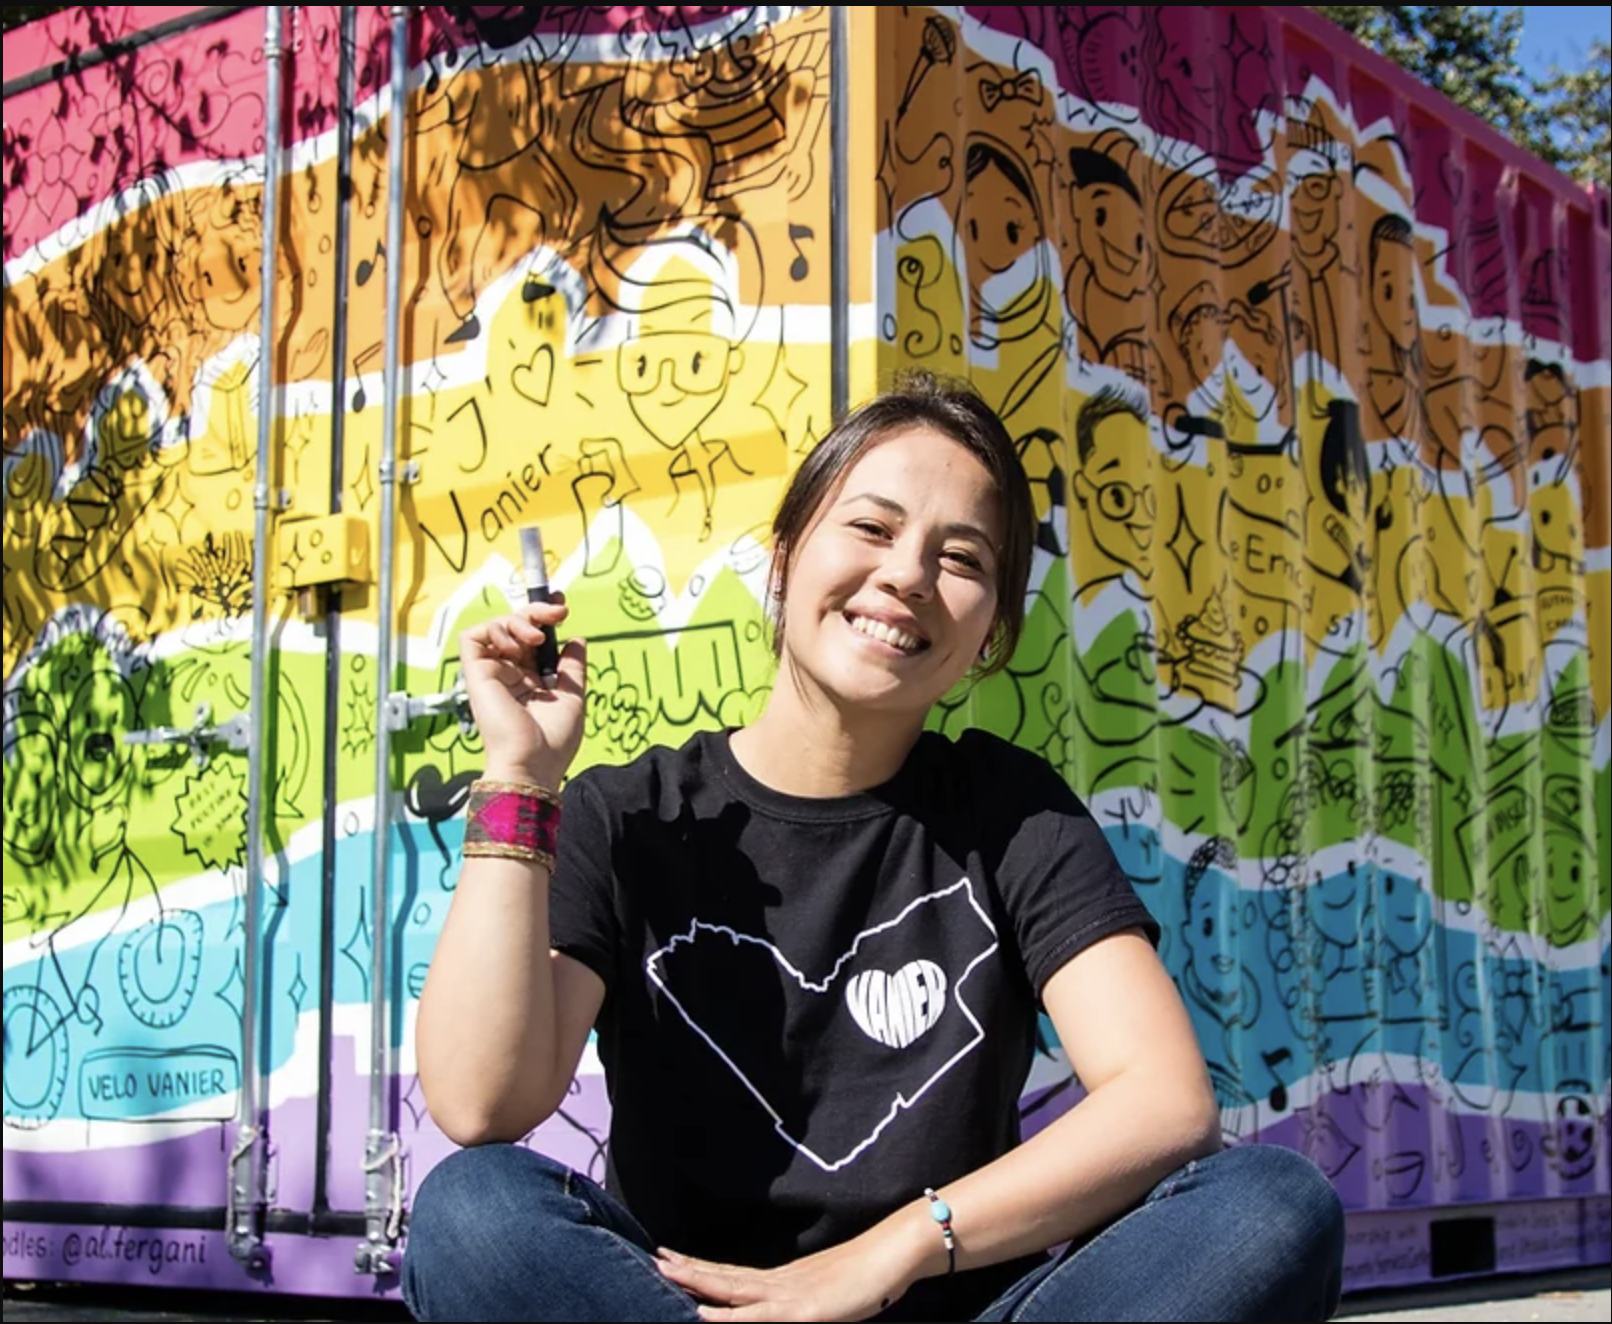 Artist Kseniya Tsoy poses in front of a mural